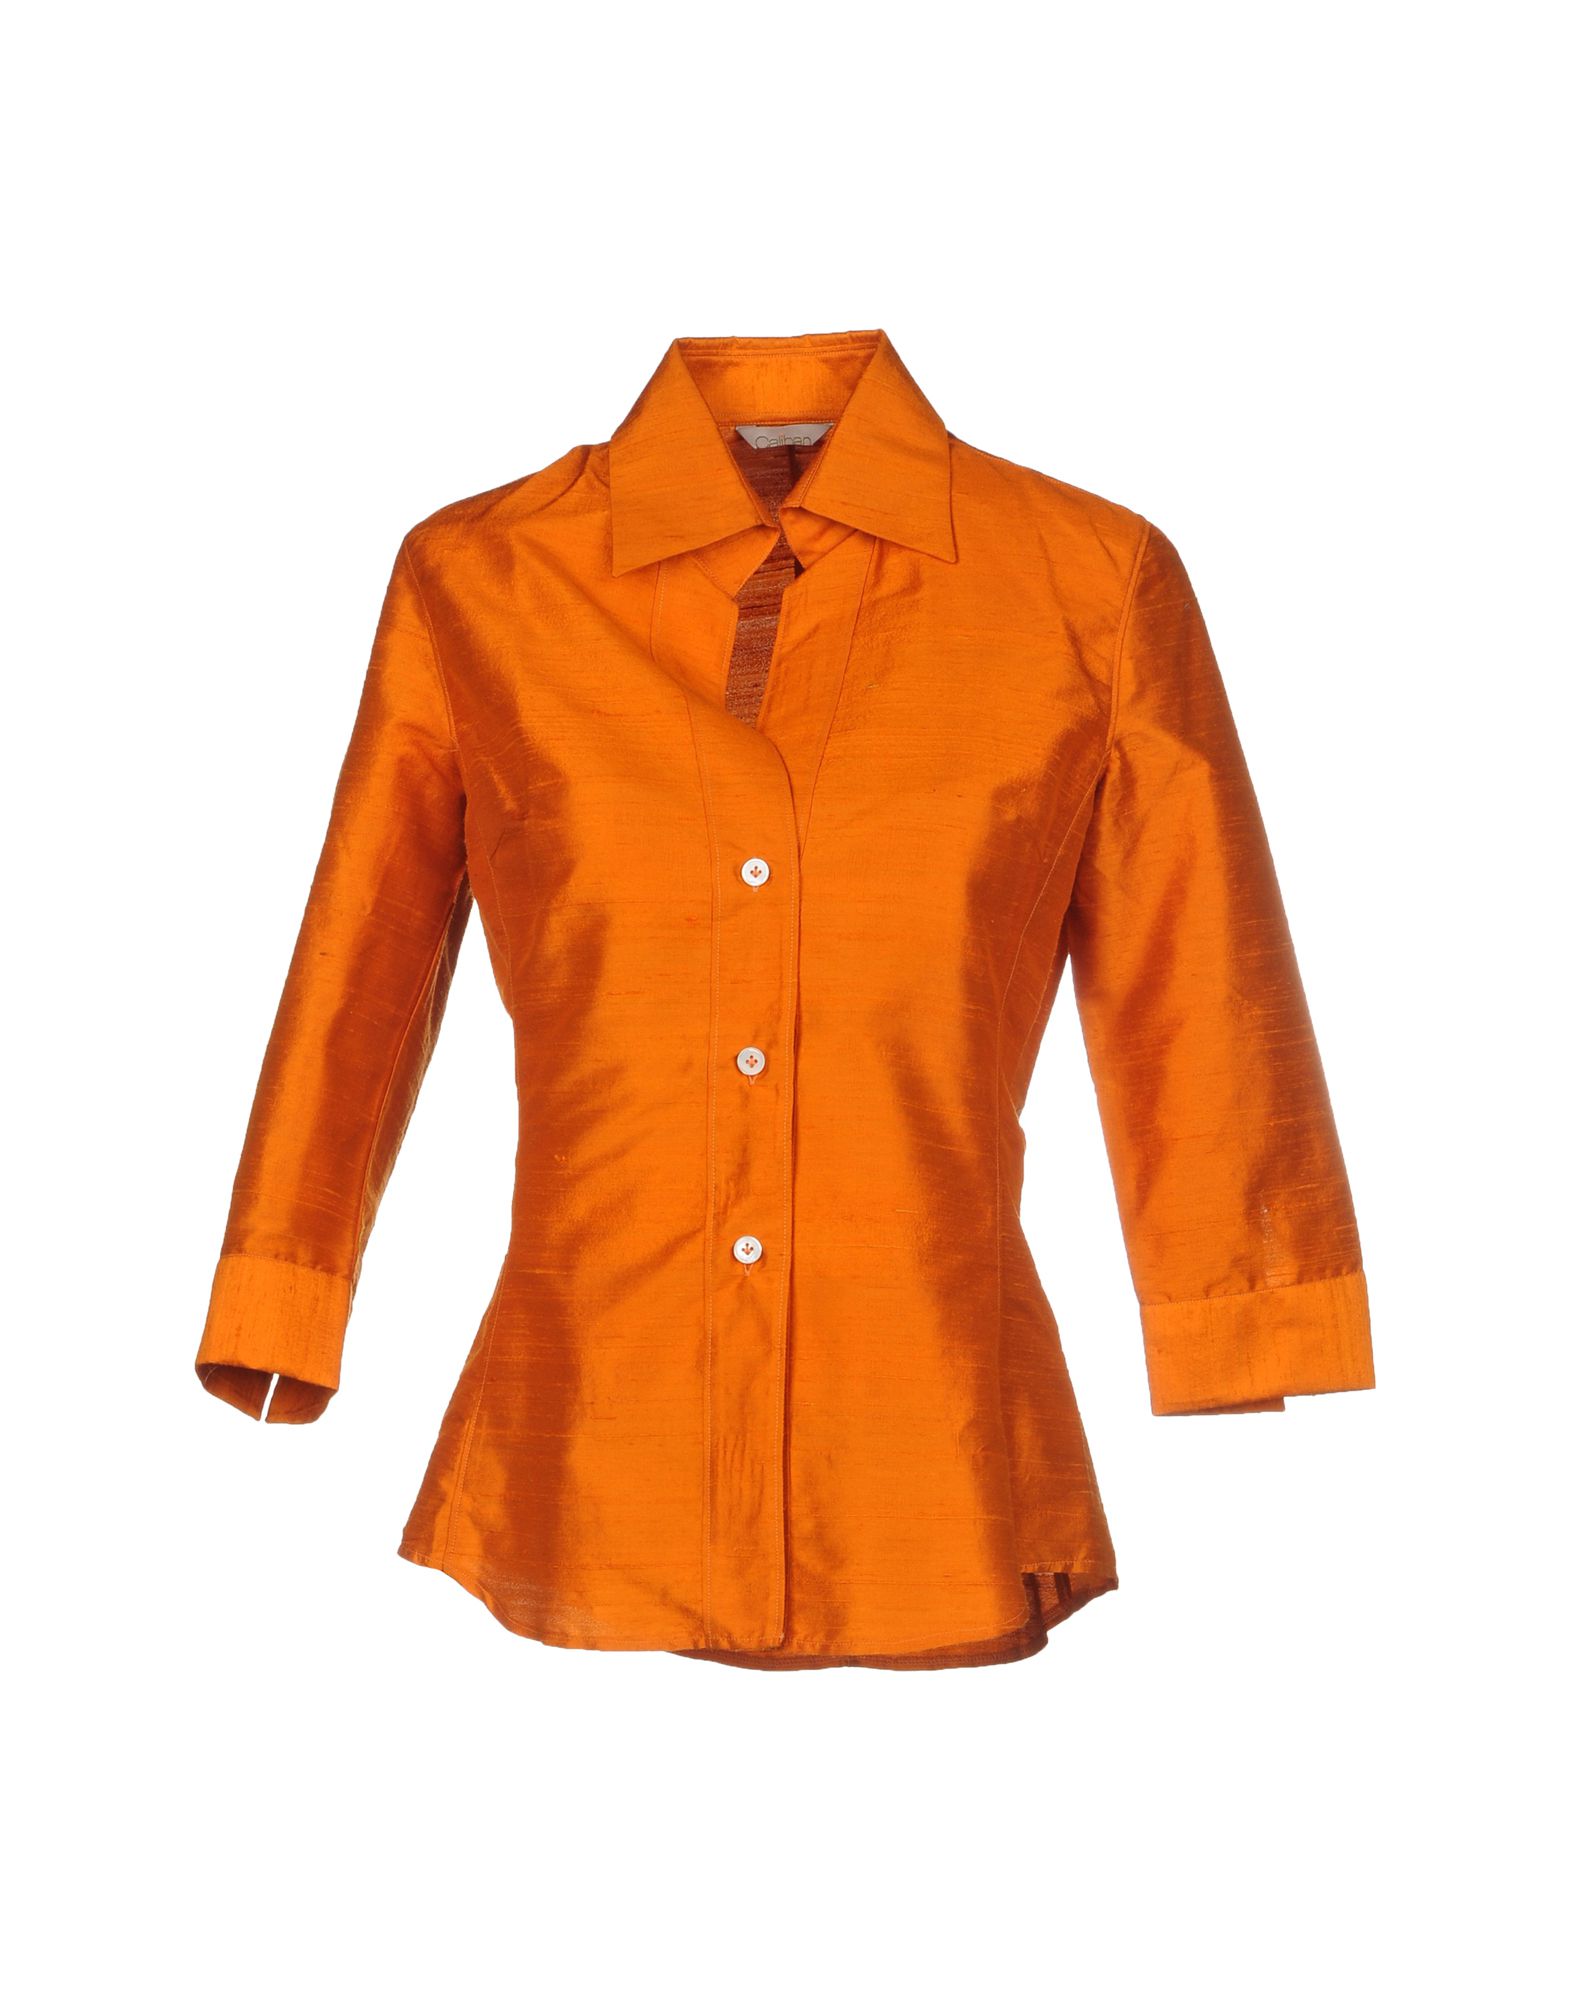 Оранжевая рубашка женская